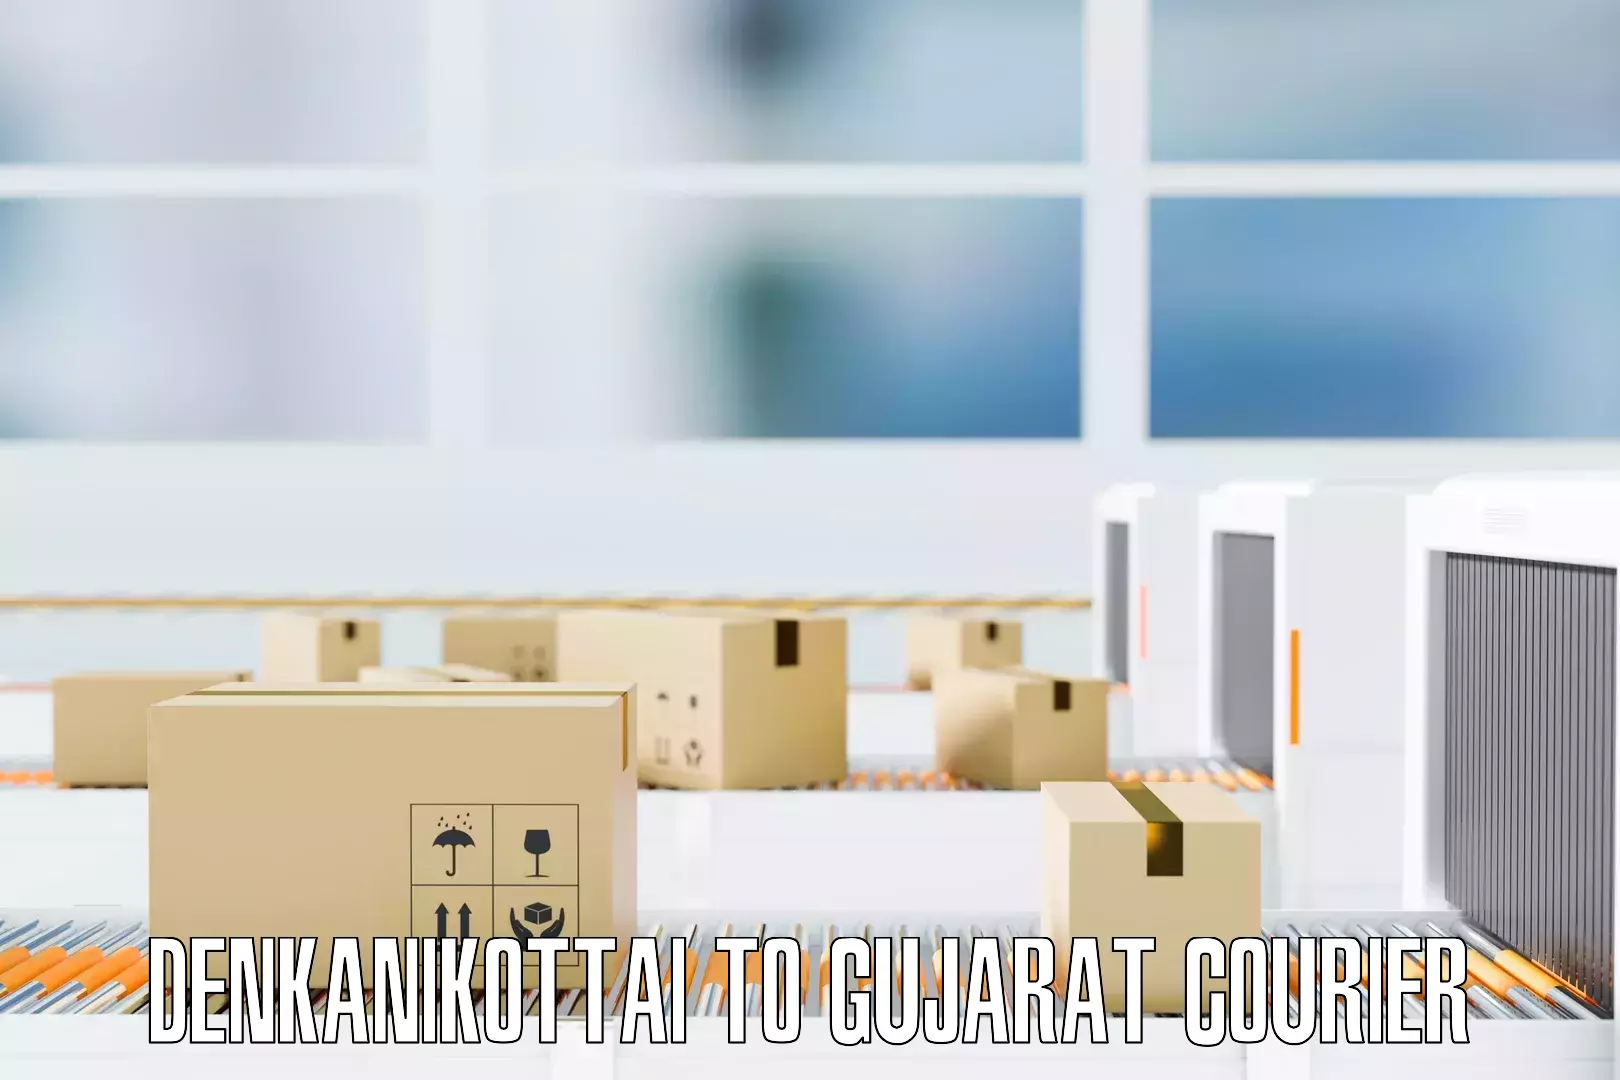 Safe household movers Denkanikottai to Gujarat